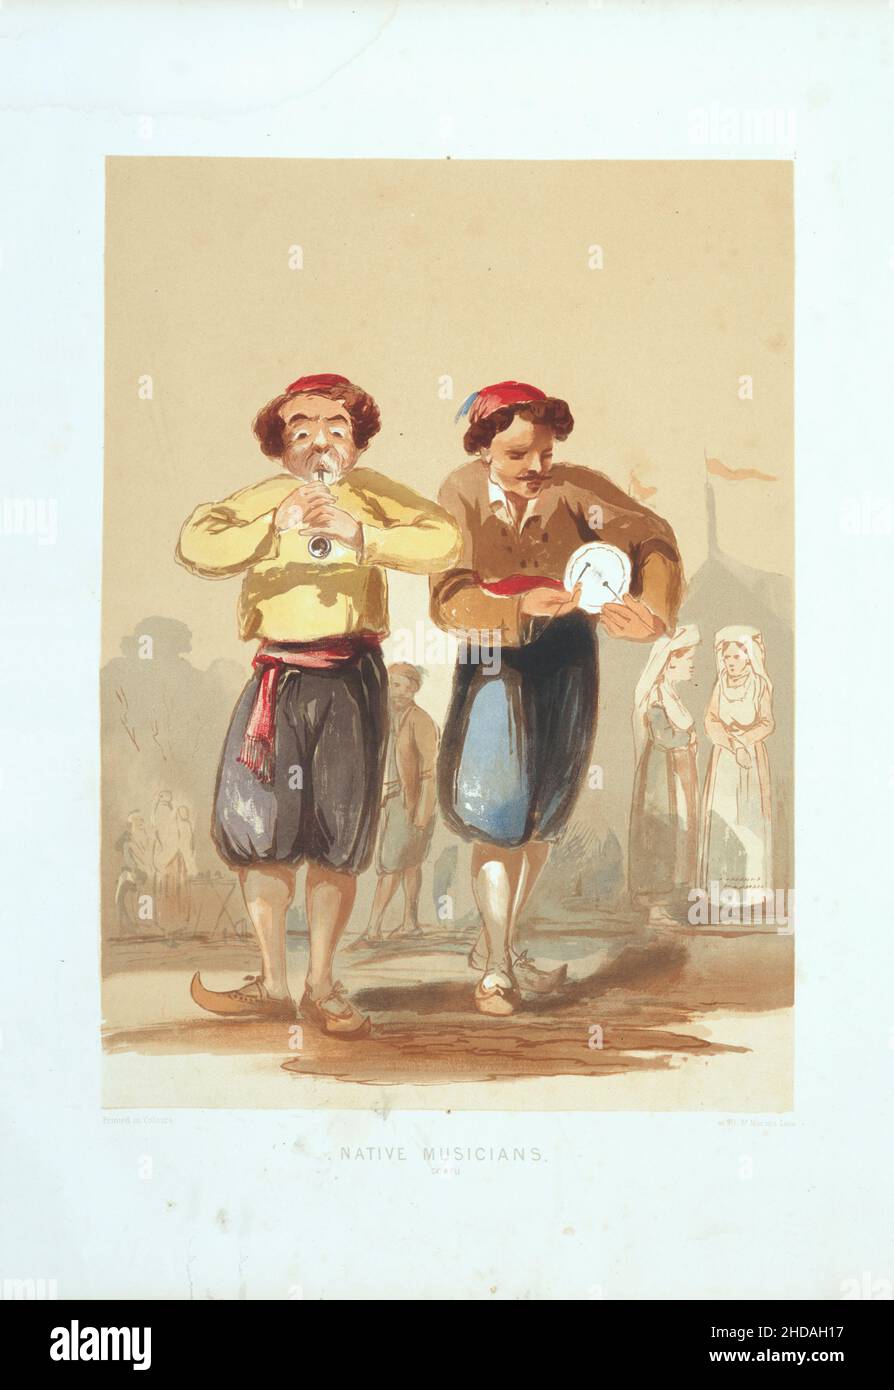 Litografia vintage a colori dell'Impero Ottomano: Musicisti nativi, Costantinopoli 1854, di Forbes Mac Bean (artista) e Justin Sutcliffe (litografo) Foto Stock